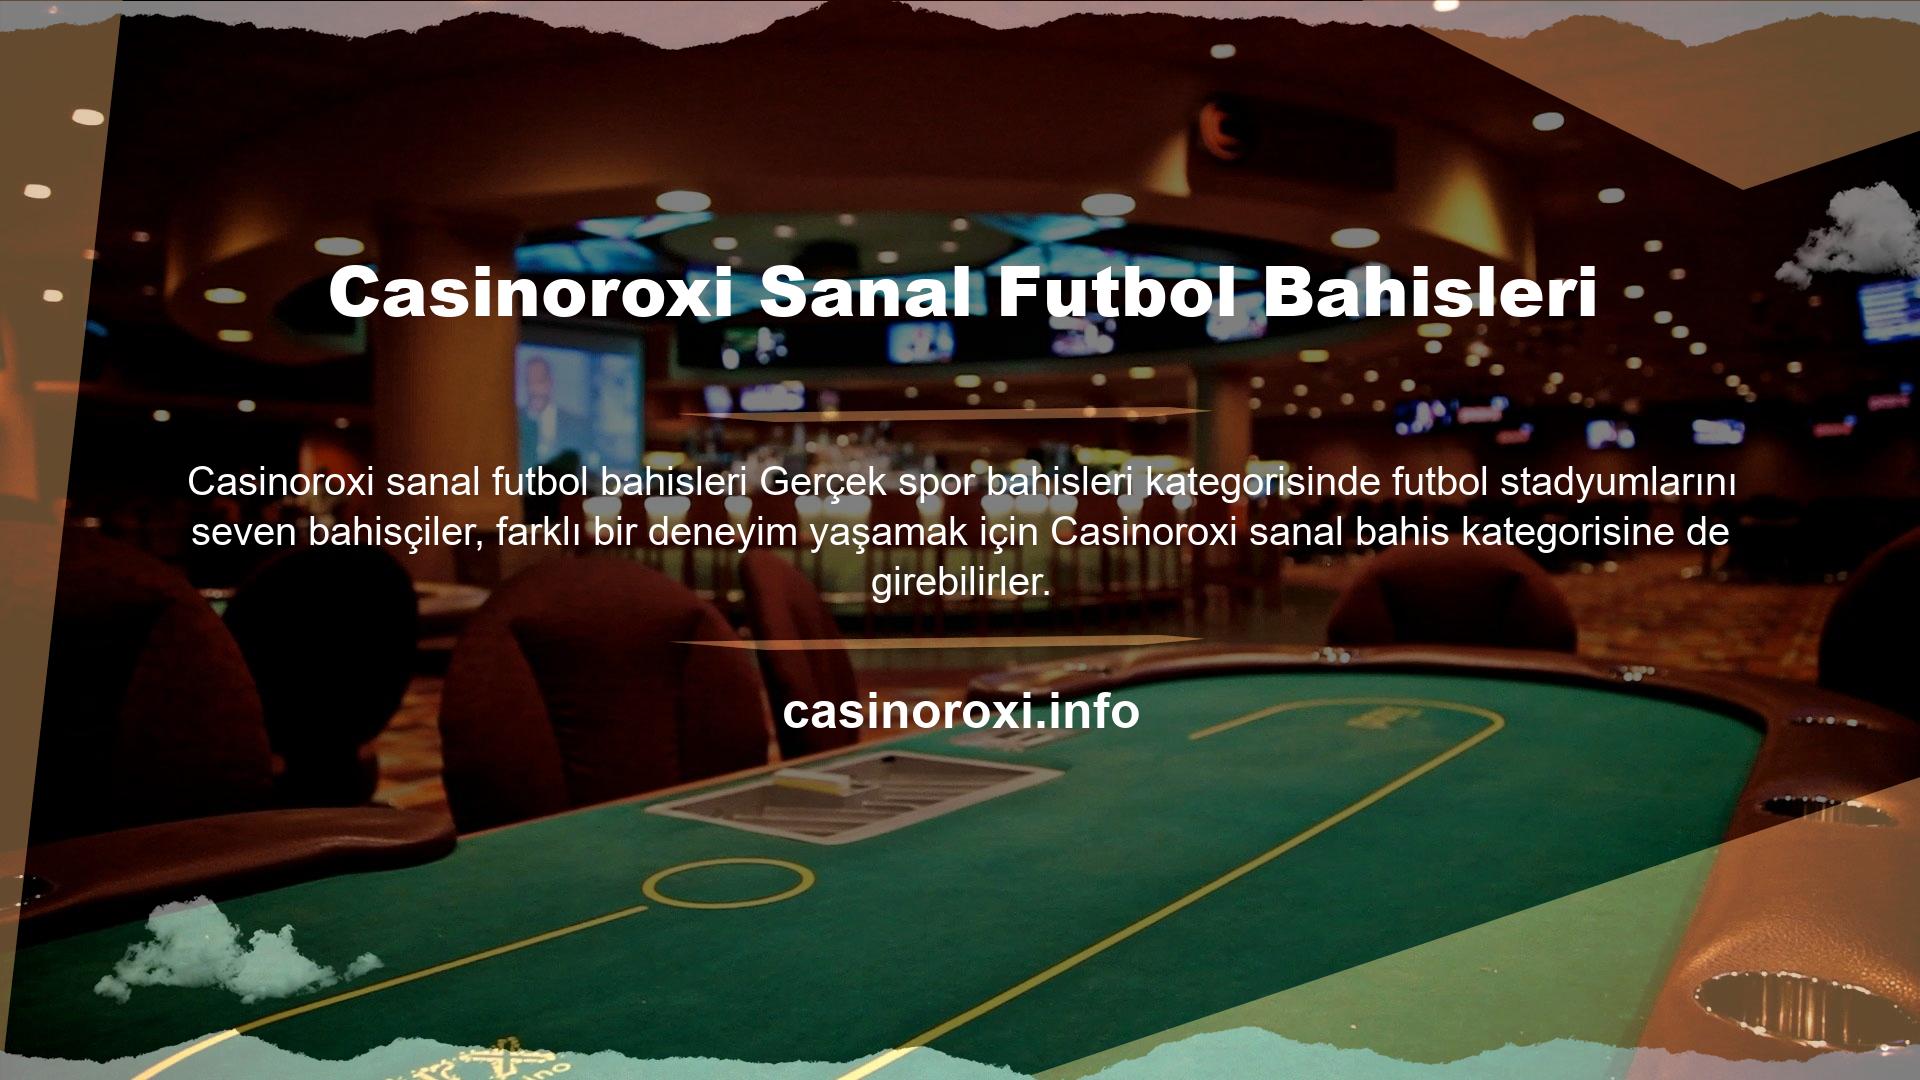 Sanal casino oyunları, gerçek spor bahisleri ile aynı çok heyecan verici yapıya sahiptir